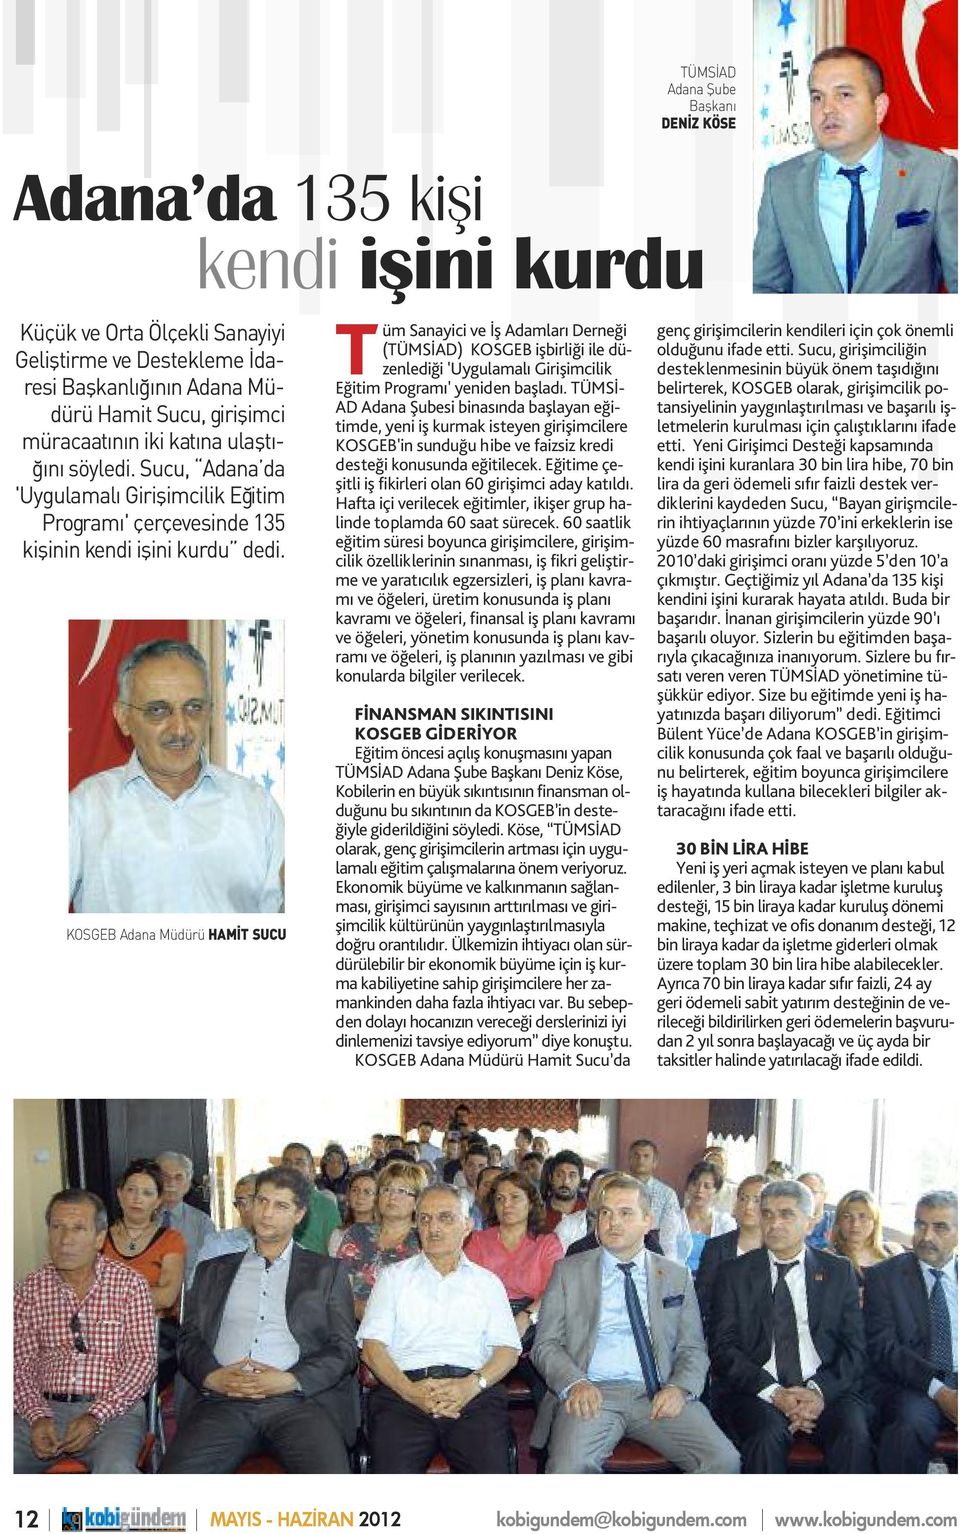 KOSGEB Adana Müdürü HAMİT SUCU Tüm Sanayici ve İş Adamları Derneği (TÜMSİAD) KOSGEB işbirliği ile düzenlediği 'Uygulamalı Girişimcilik Eğitim Programı' yeniden başladı.